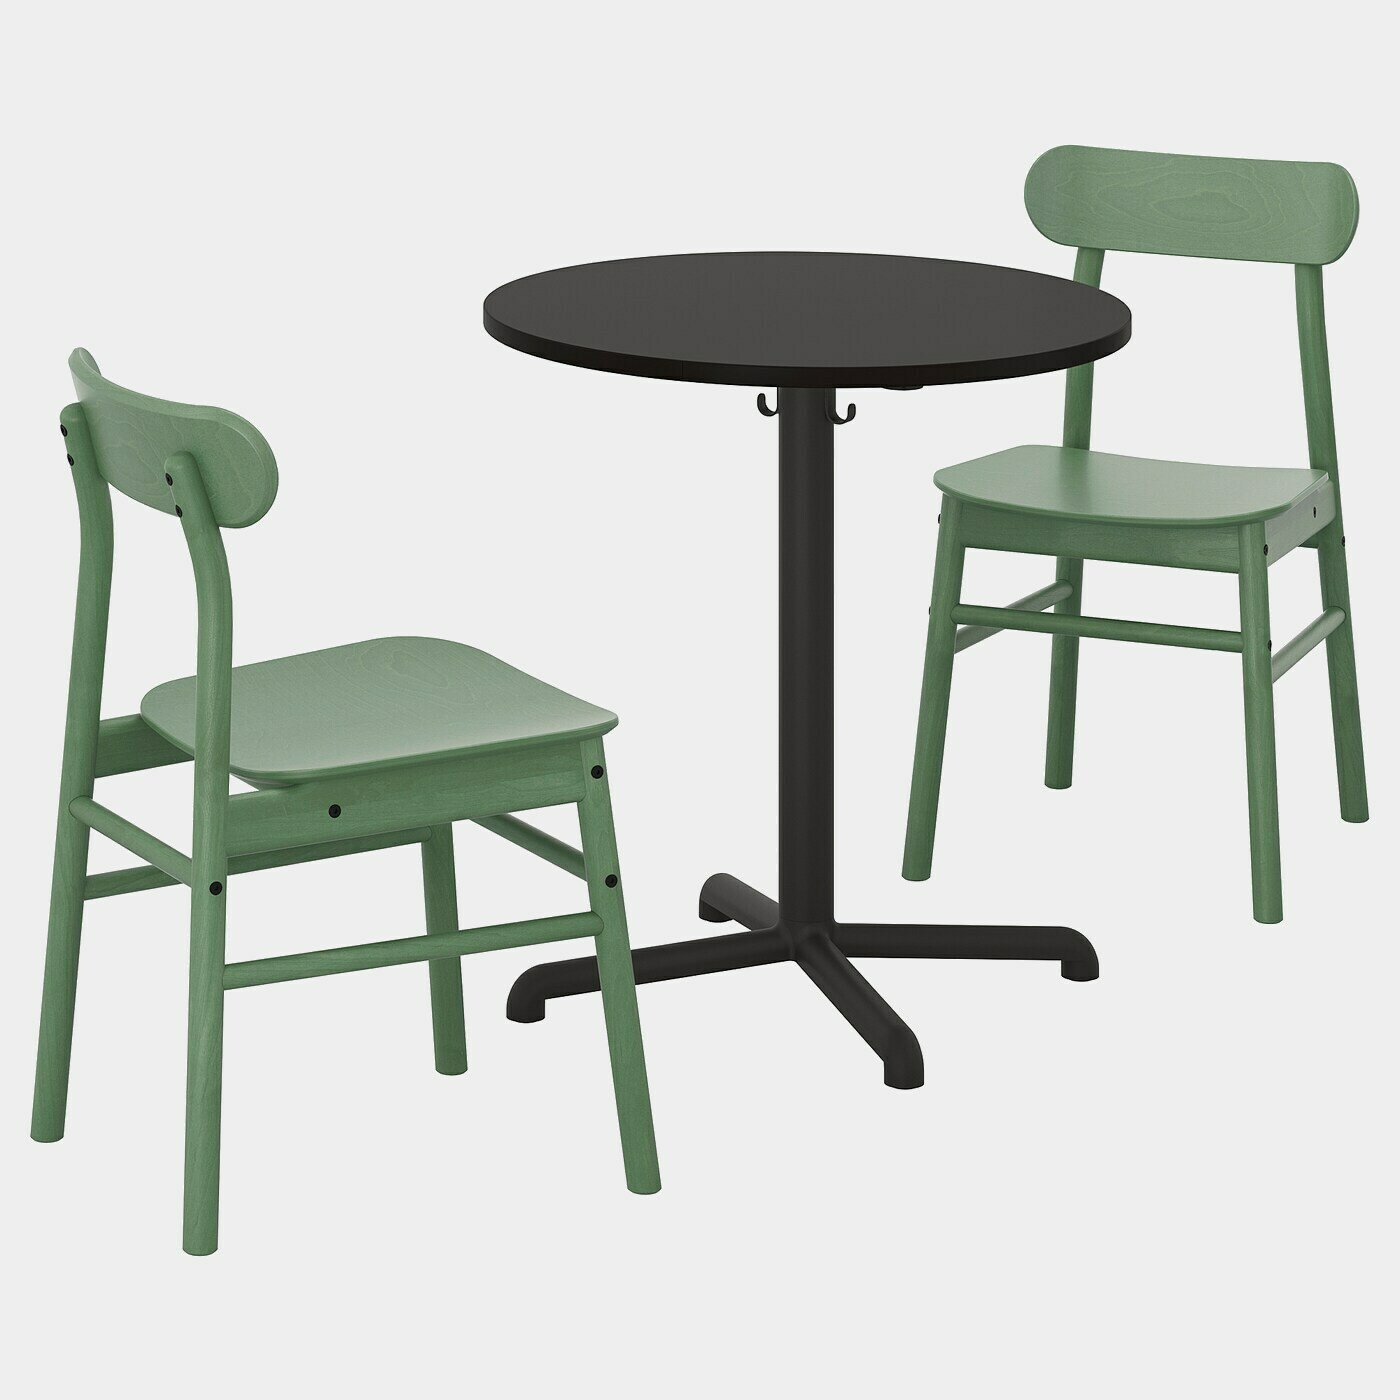 STENSELE / RÖNNINGE Tisch und 2 Stühle  - Caféhaustische - Möbel Ideen für dein Zuhause von Home Trends. Möbel Trends von Social Media Influencer für dein Skandi Zuhause.